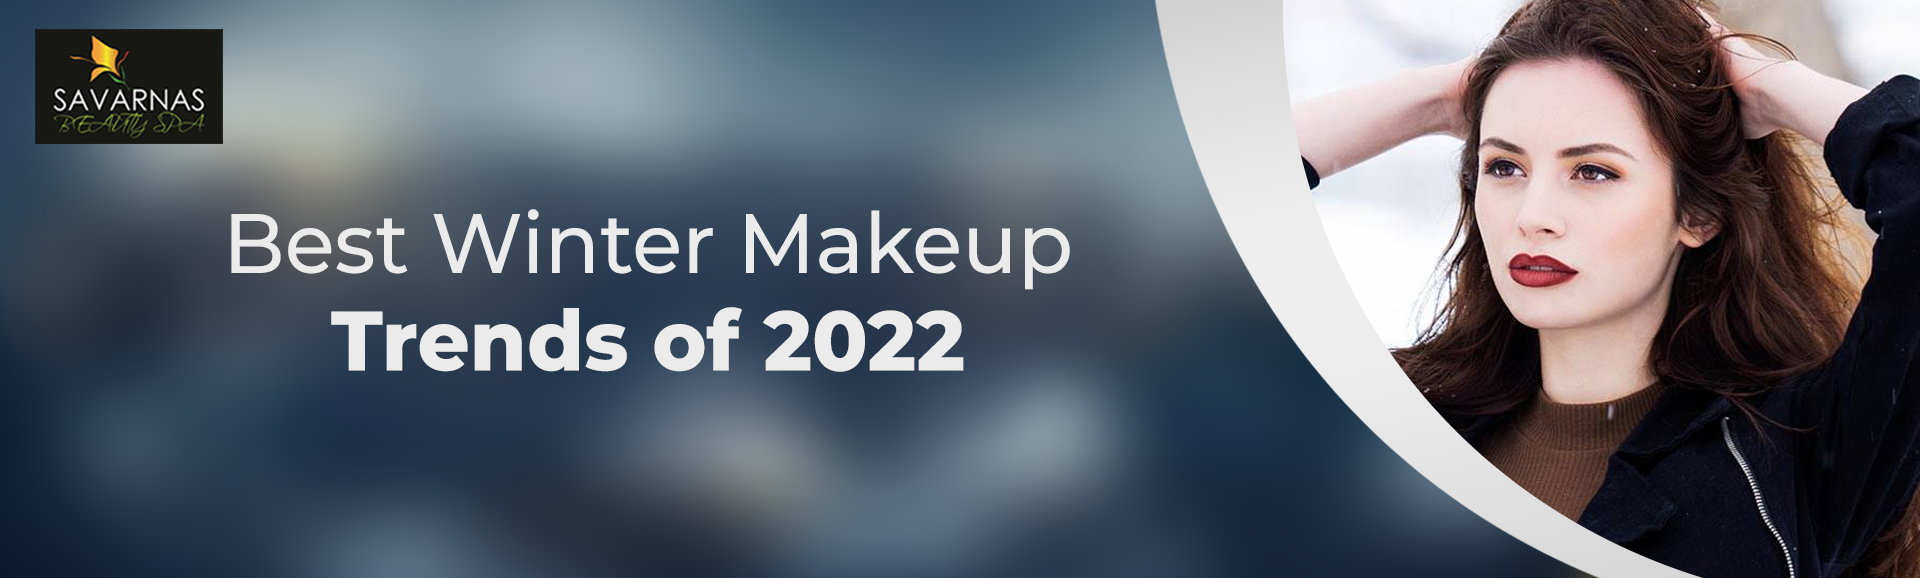 Best Winter Makeup Trends of 2022